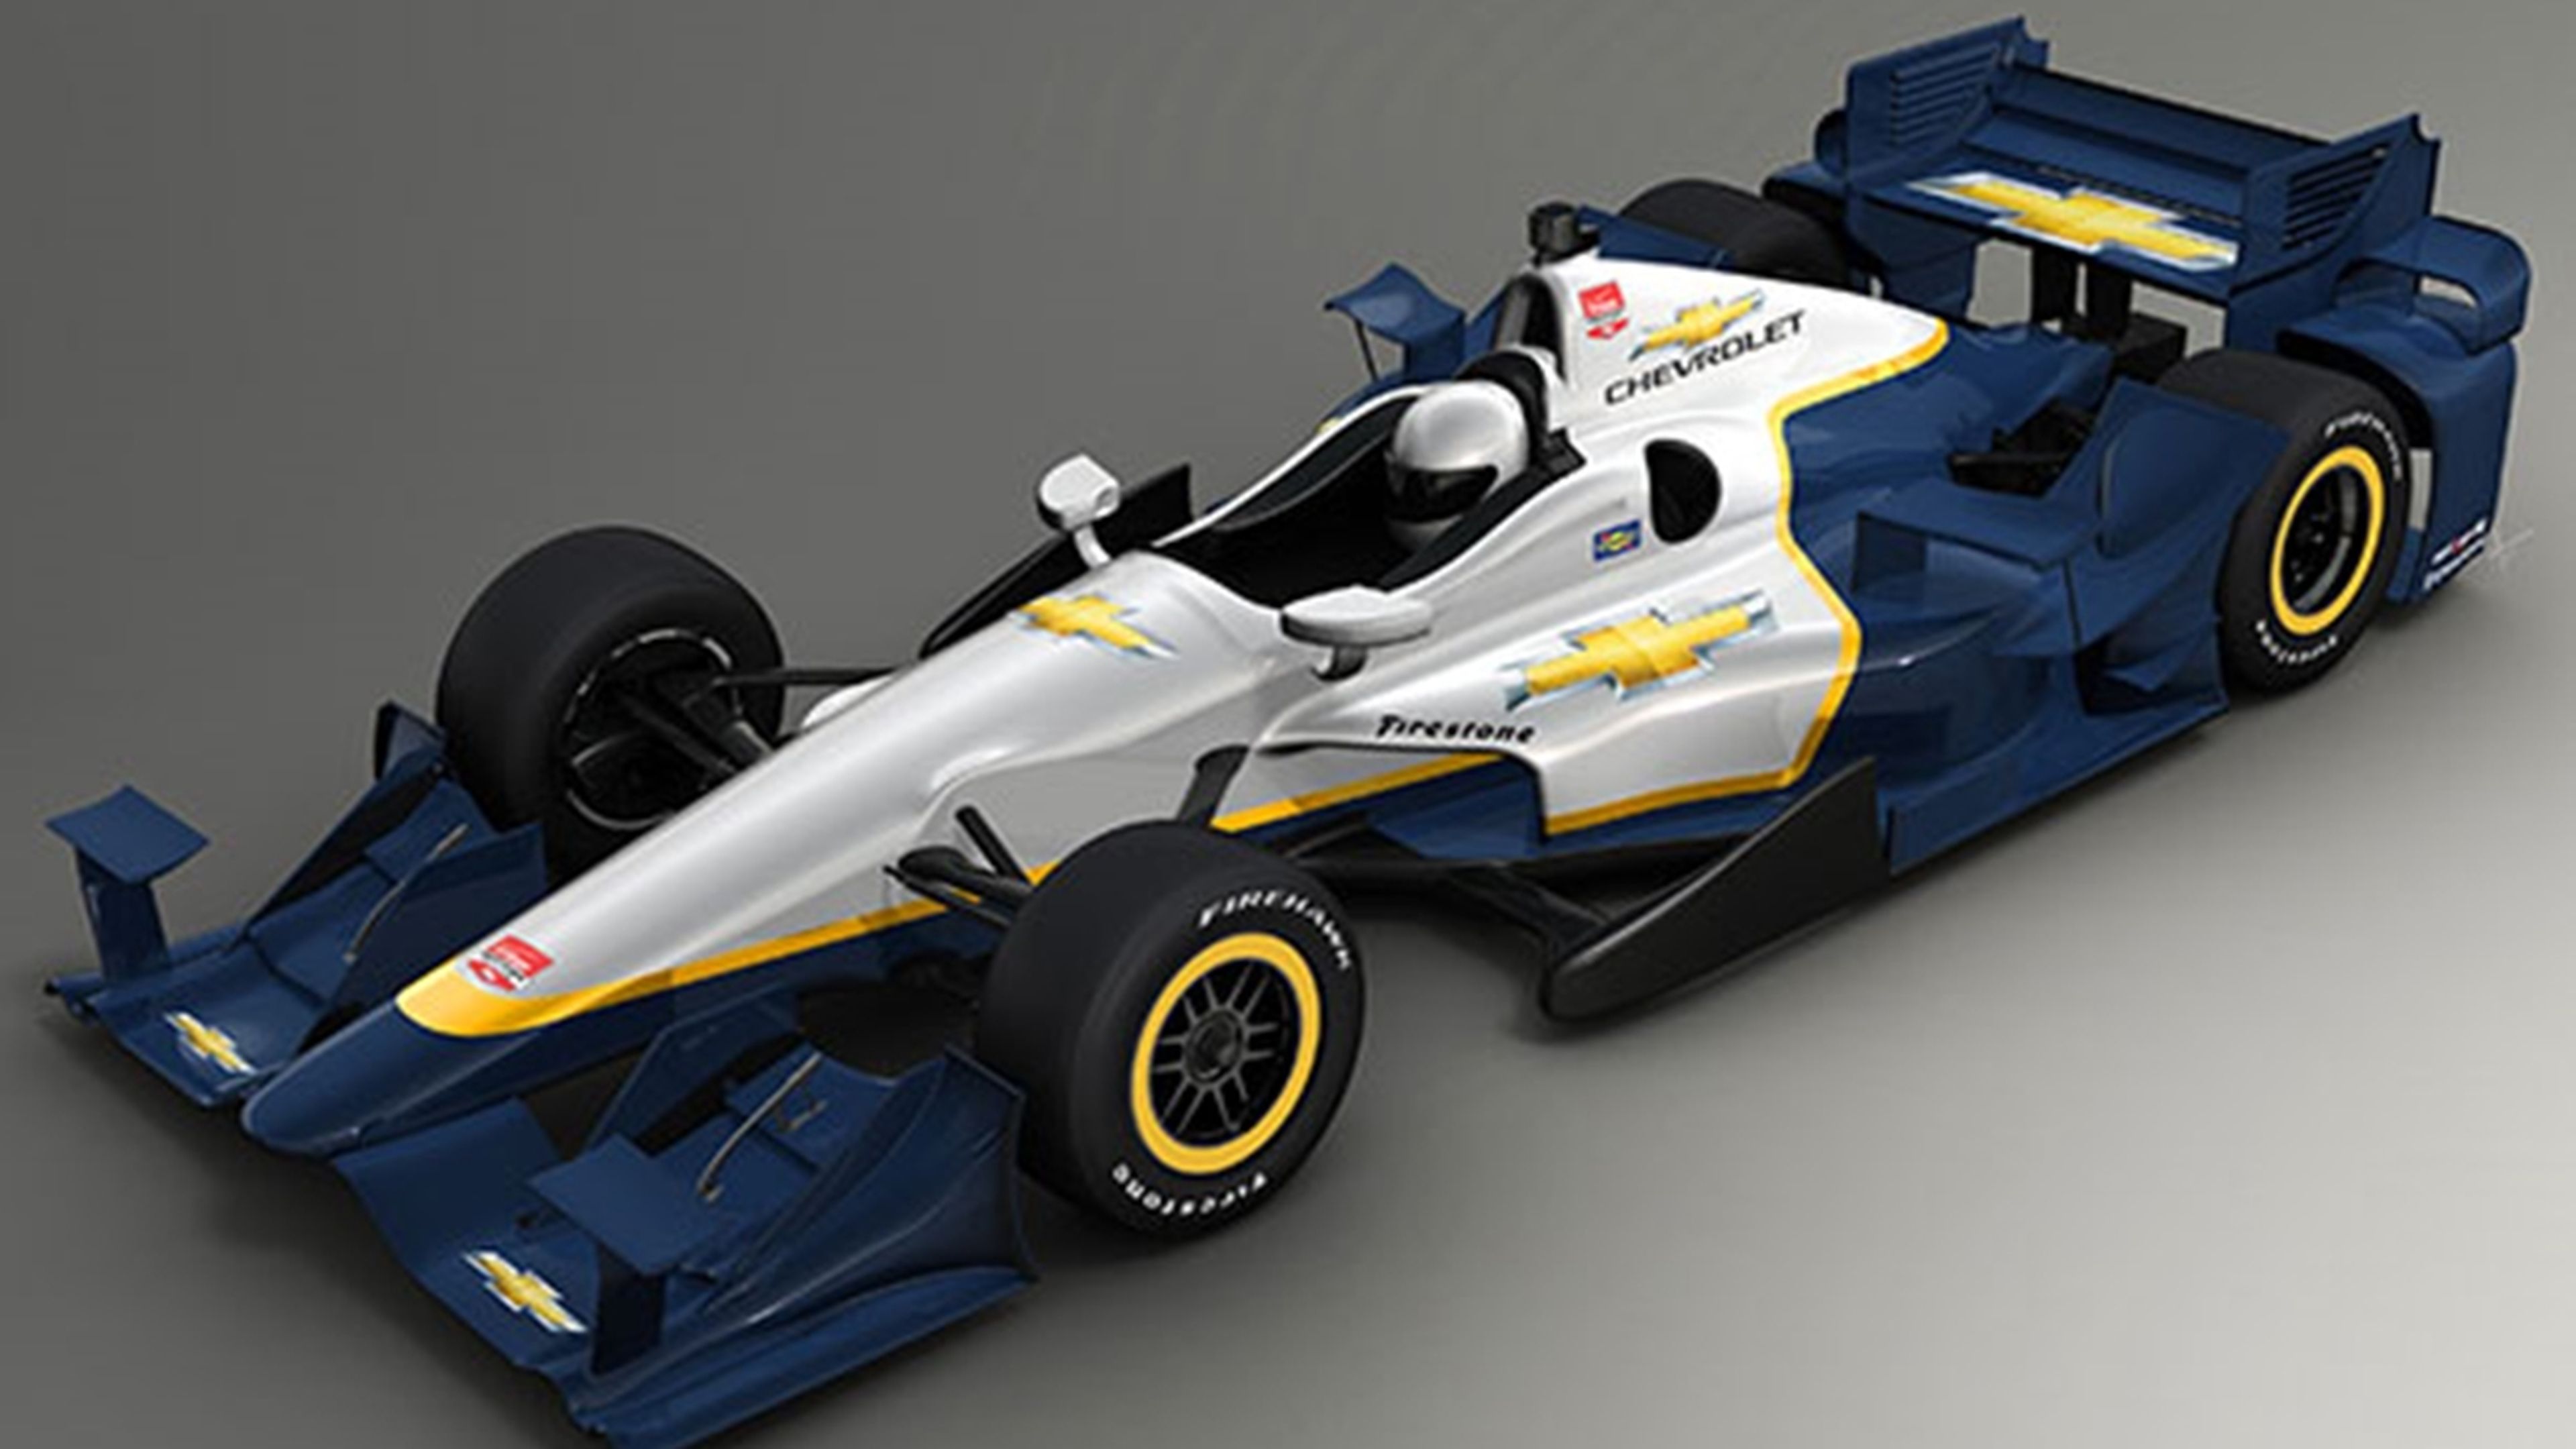 Chevrolet desvela el nuevo kit aerodinámico para la Indycar